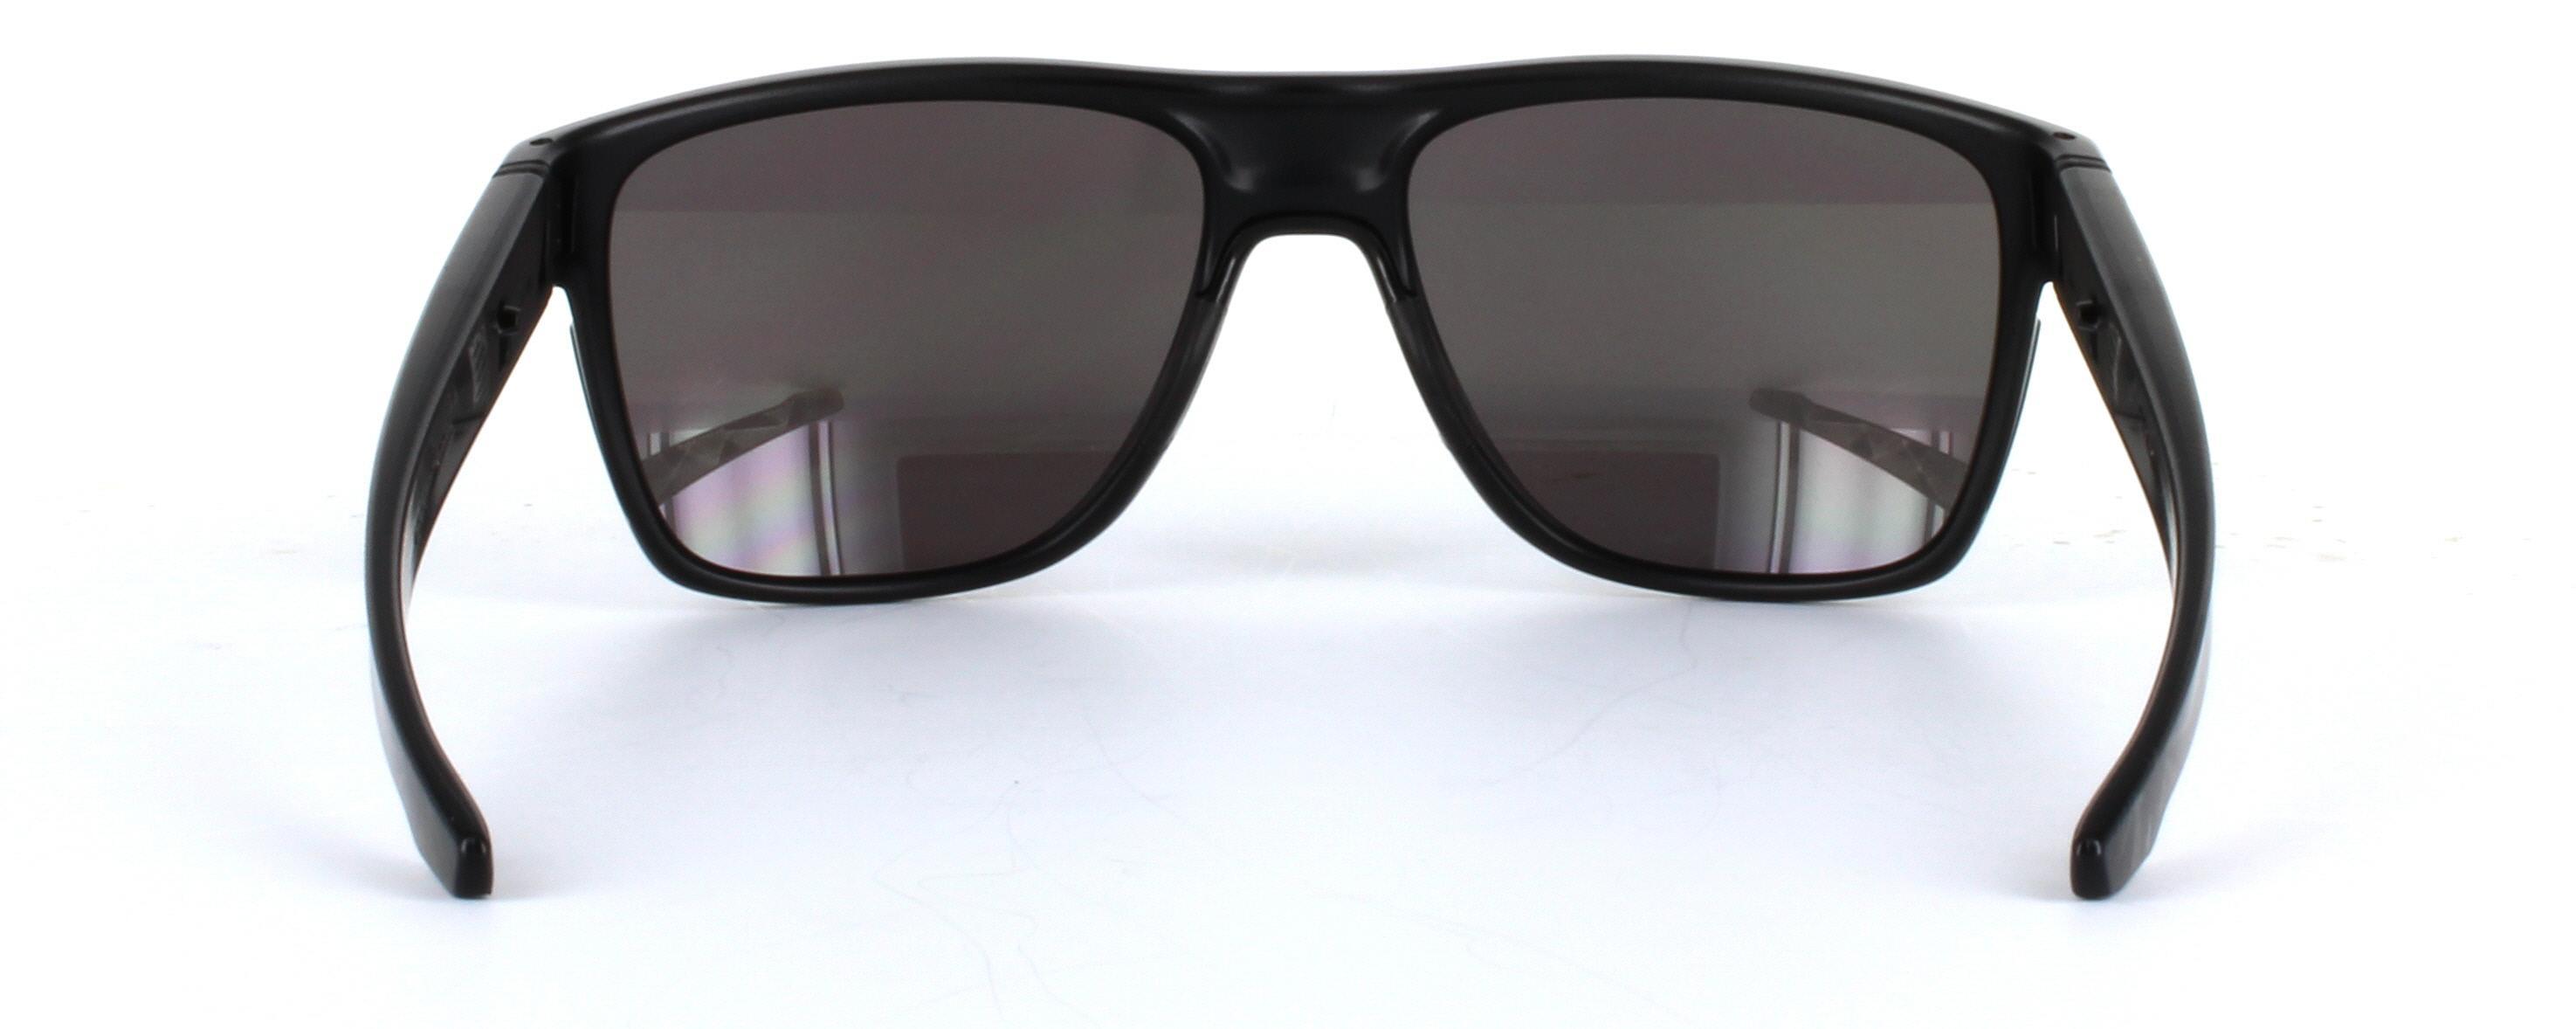 Oakley (O9360) Black Full Rim Plastic Prescription Sunglasses - Image View 3